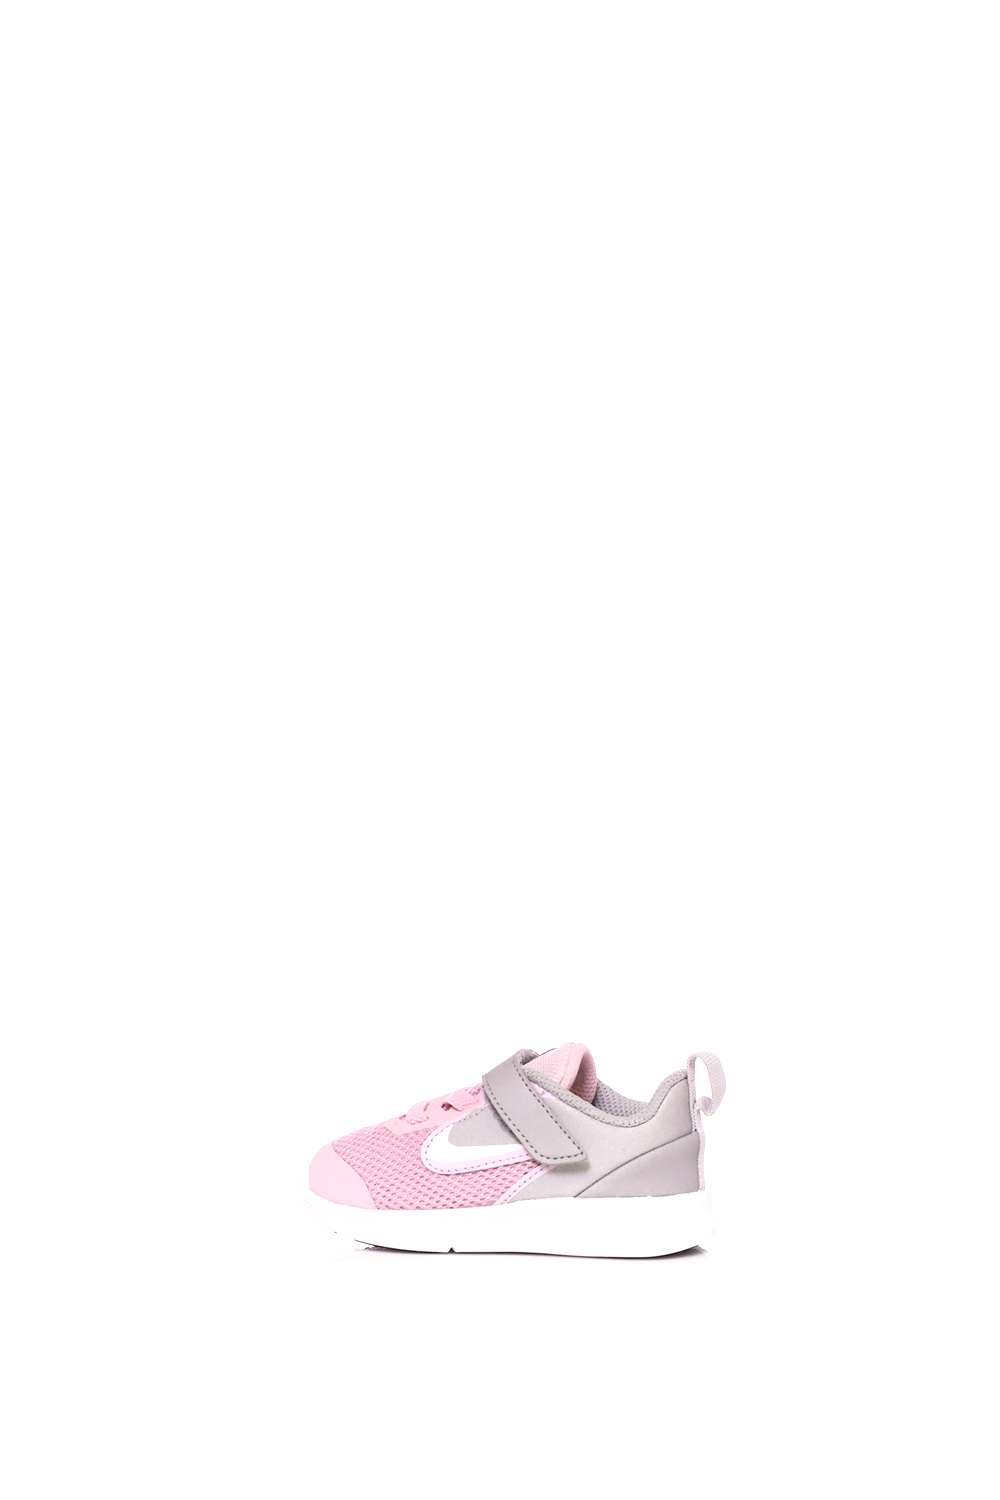 Παιδικά/Baby/Παπούτσια/Αθλητικά NIKE - Βρεφικά αθλητικά παπούτσια NIKE DOWNSHIFTER 9 ροζ